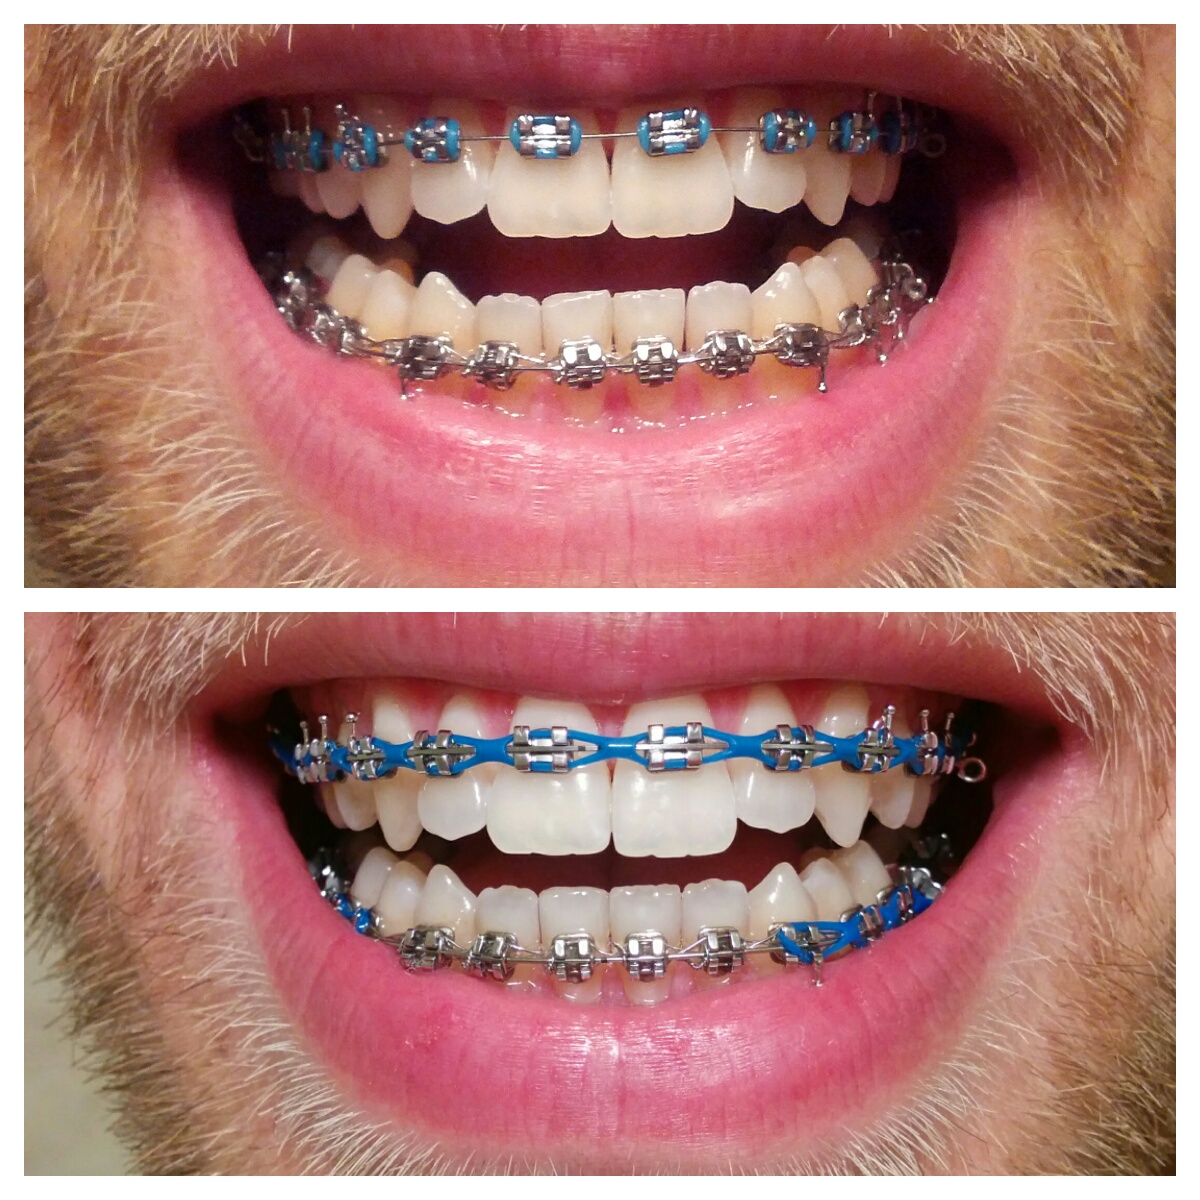 zdjęcie łańcuszka ortodontycznego przed i po wizycie